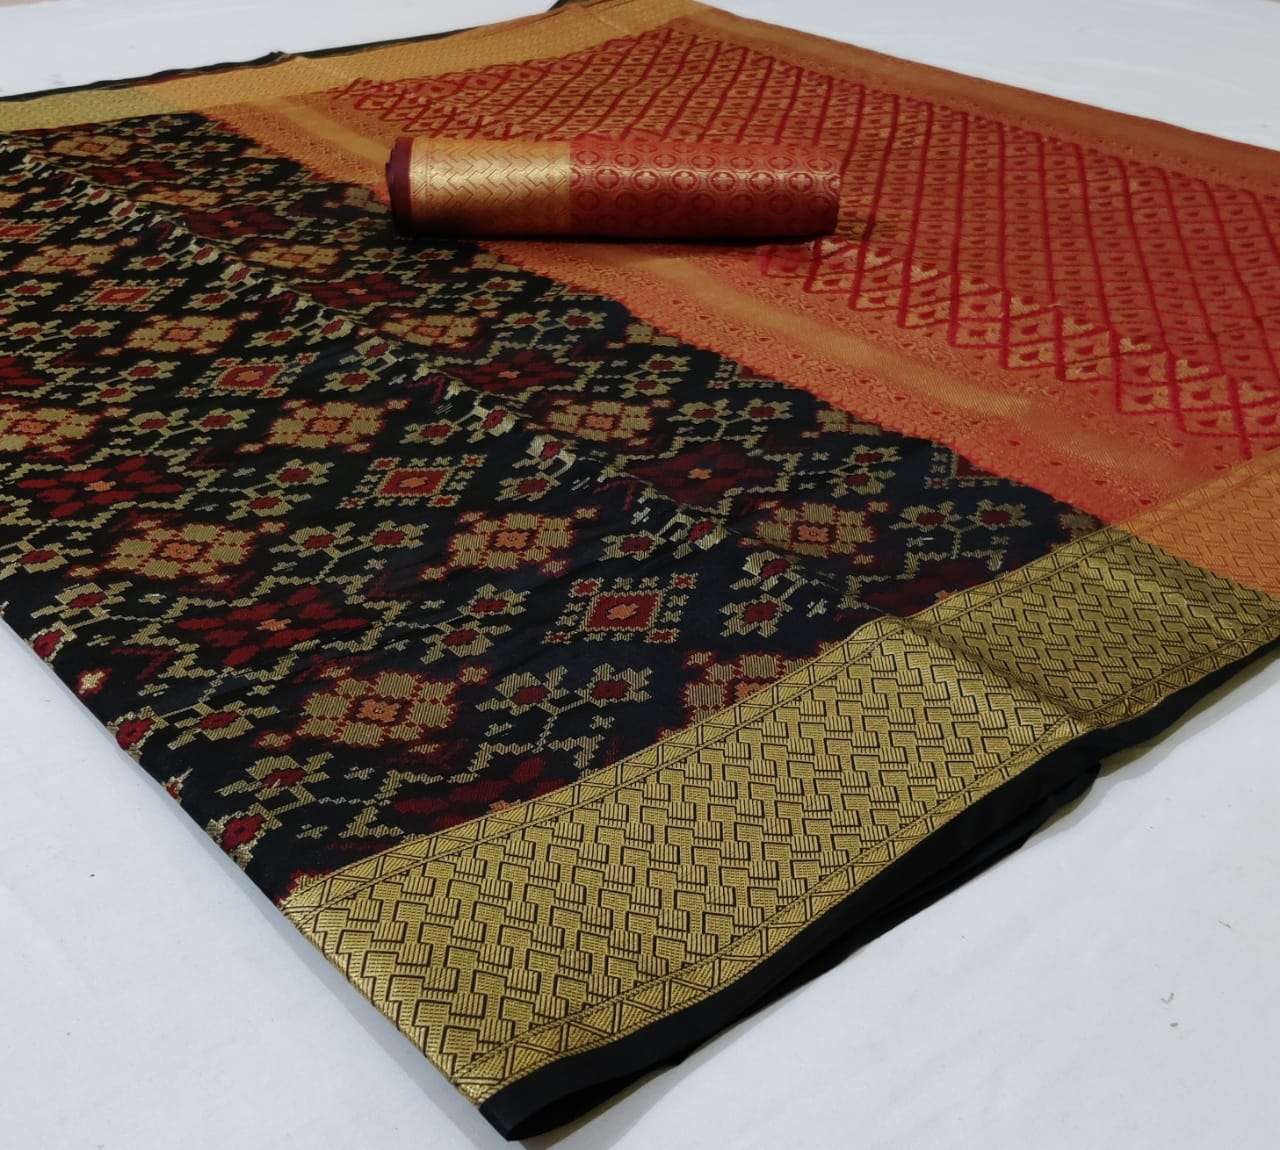 Patola Sarees Vol 1 Banarasi Patola Print With Zari Weaving ...